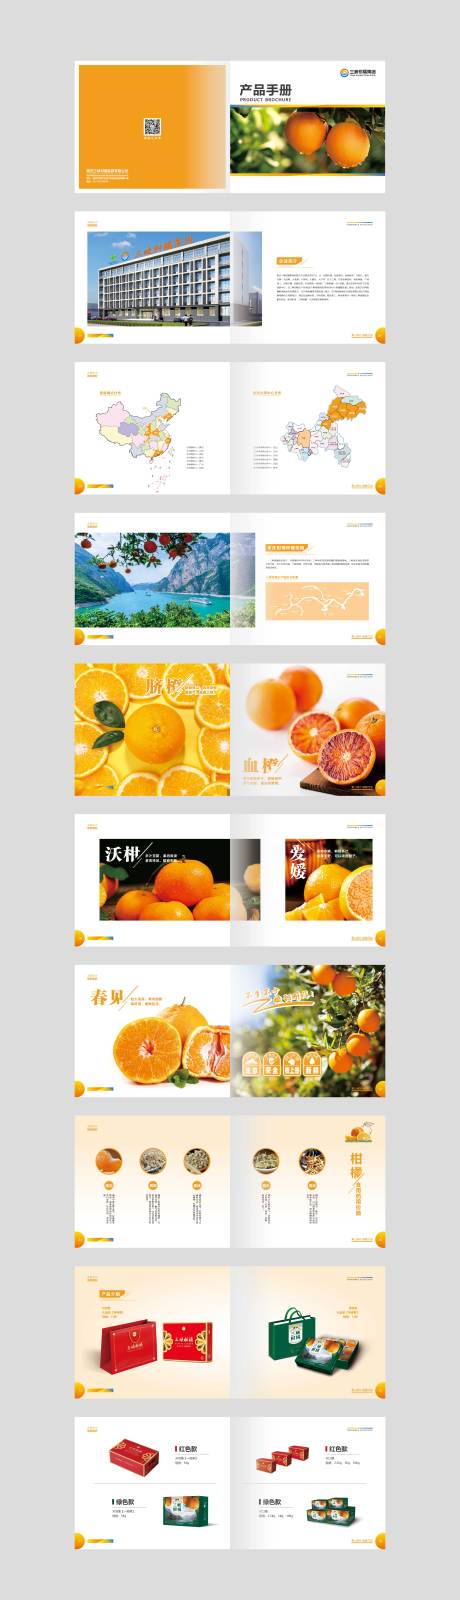 柑橘画册宣传册